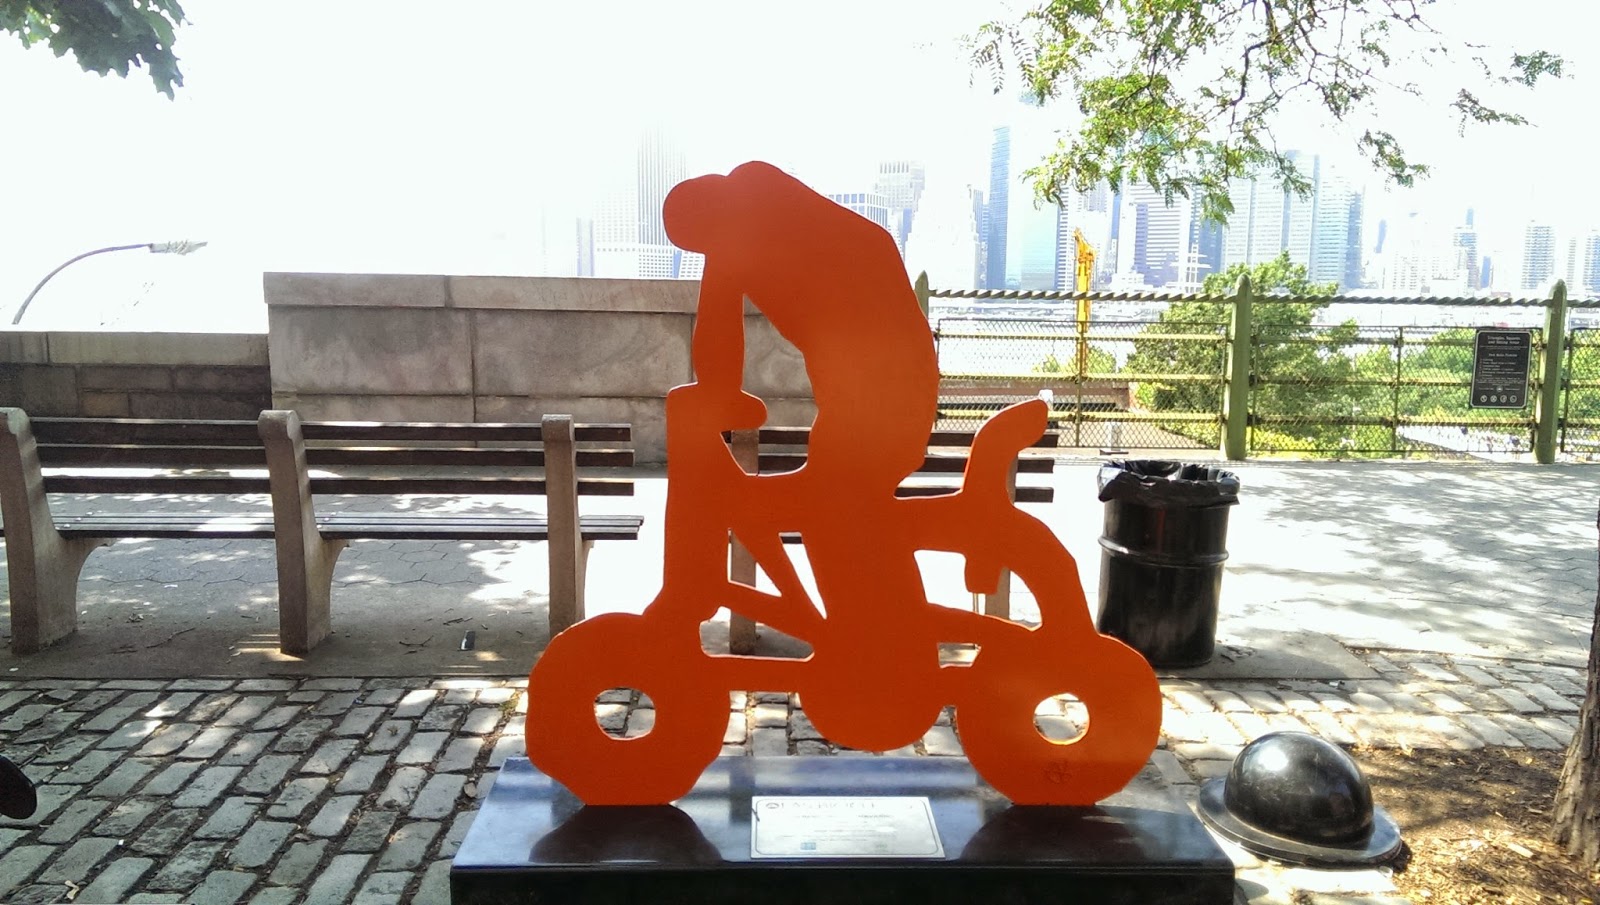 Las Bicicletas Art Work in Brooklyn Heights